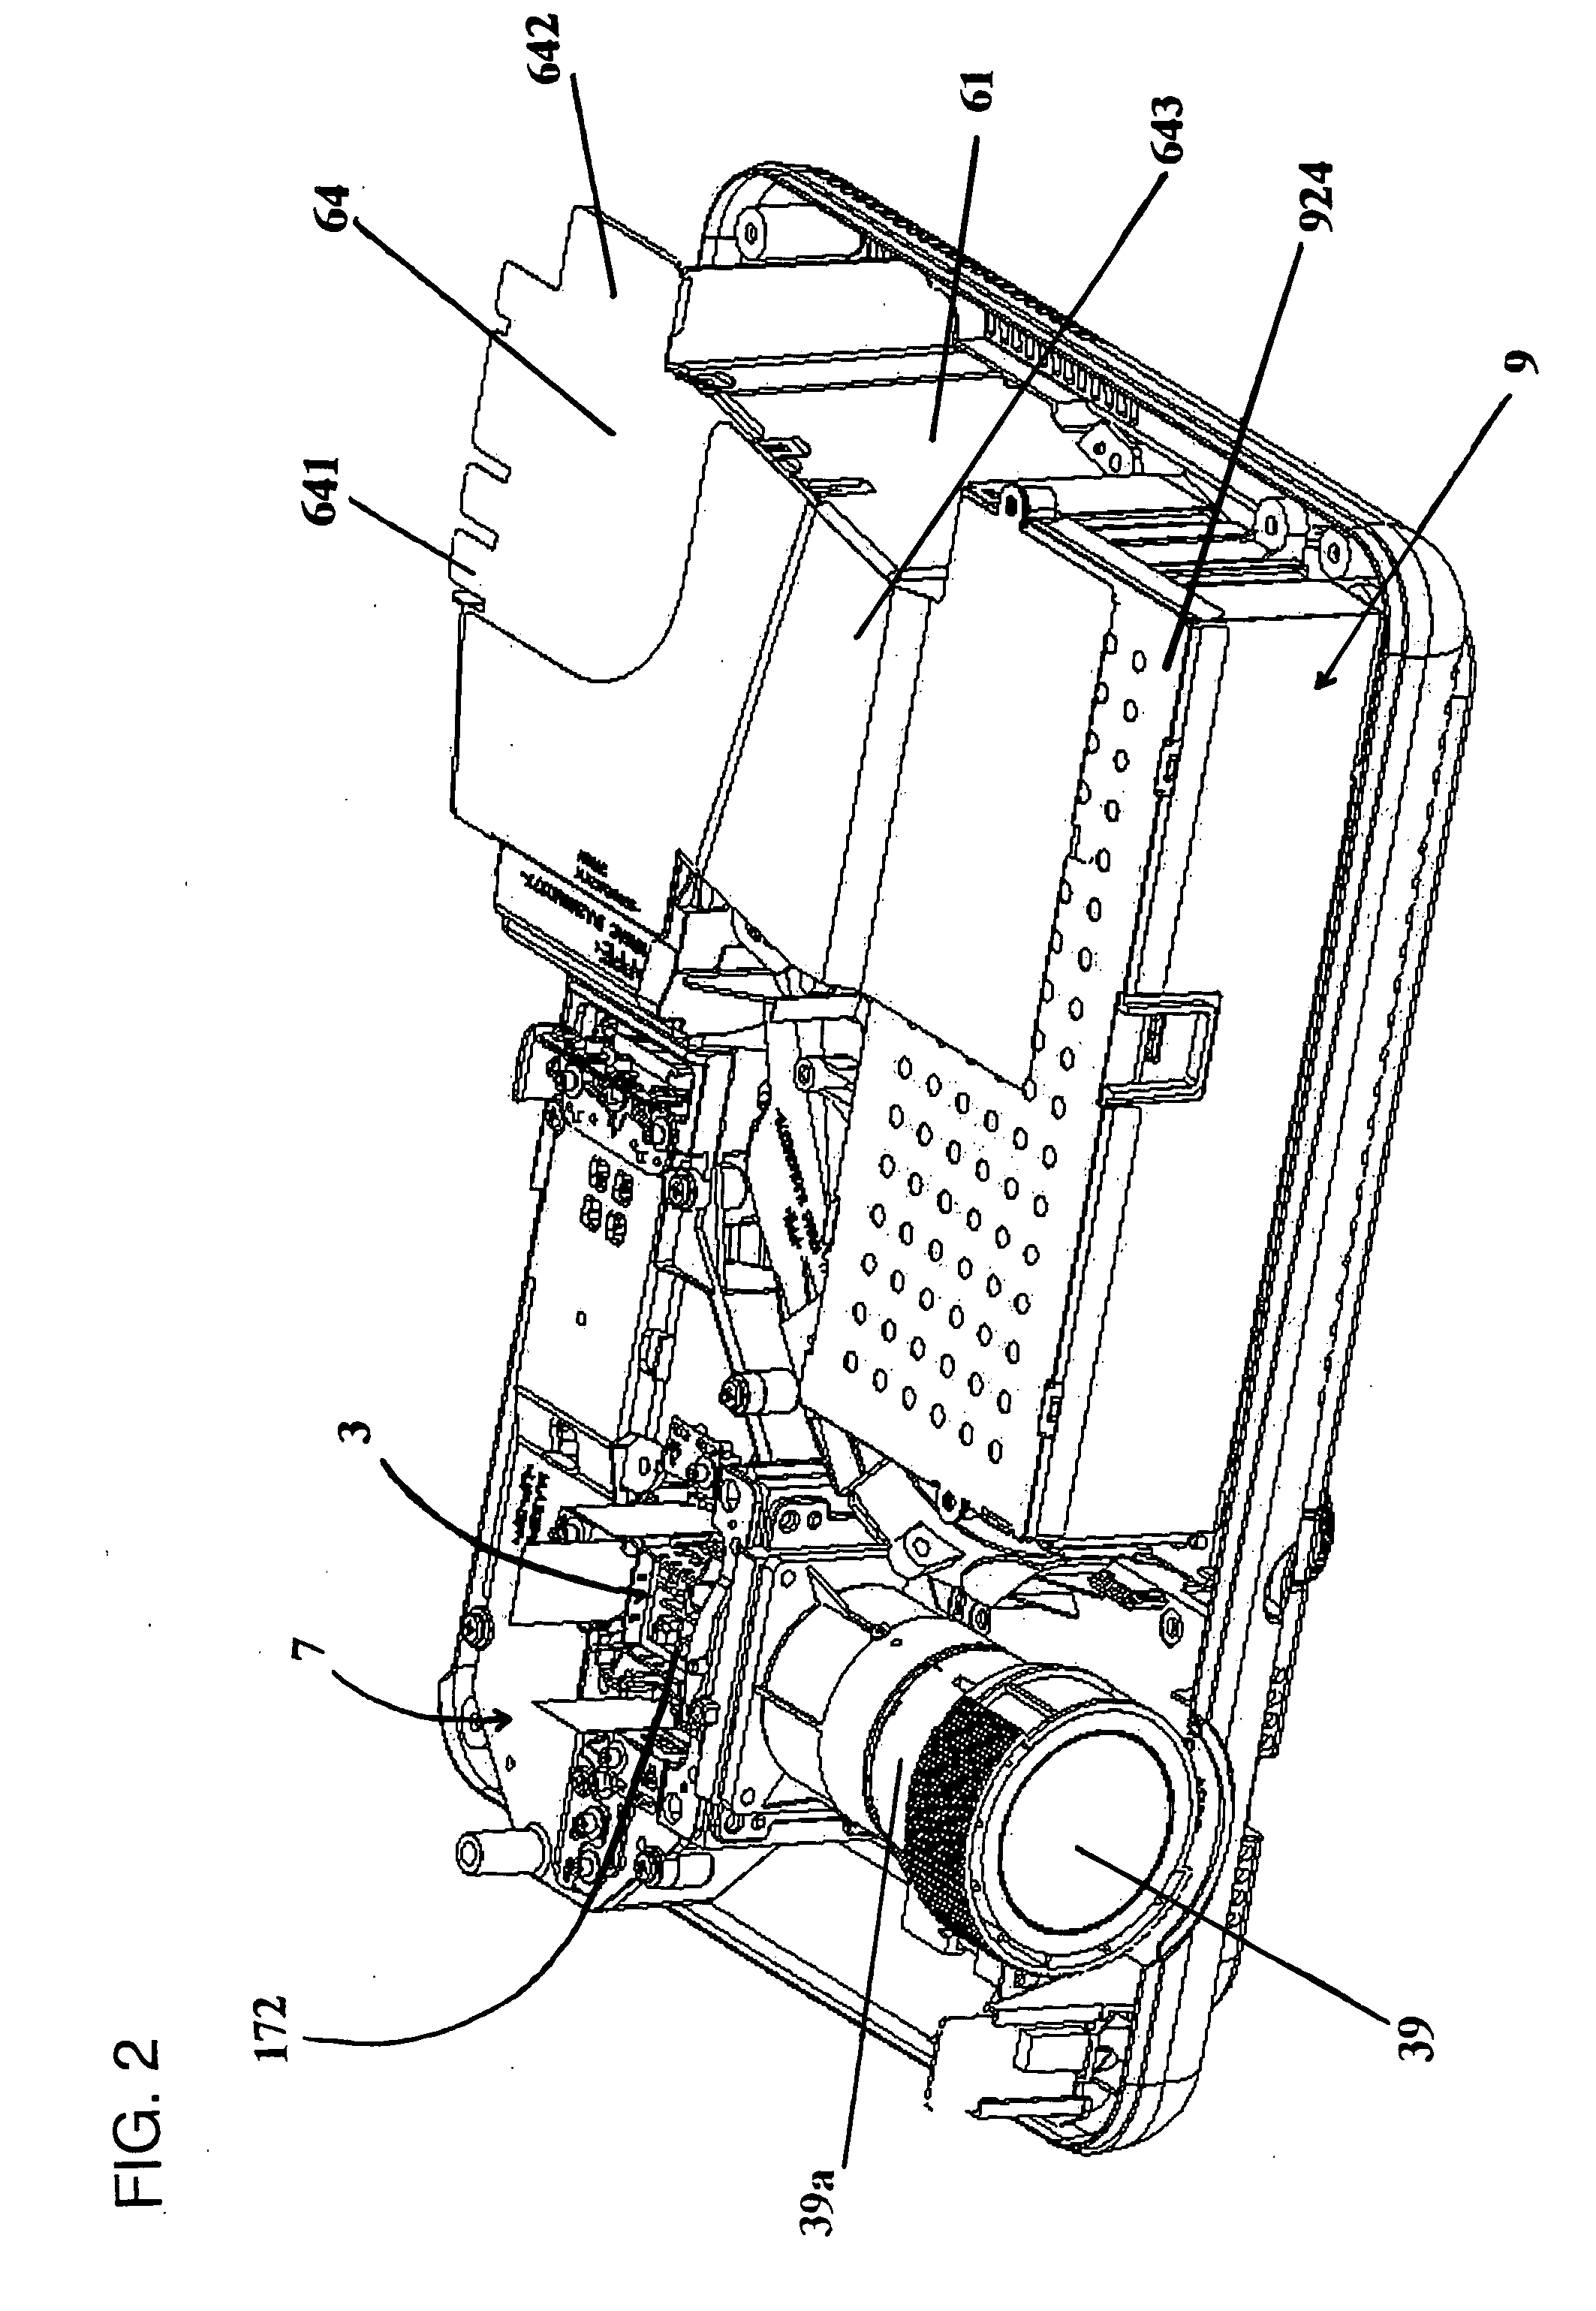 Projector apparatus